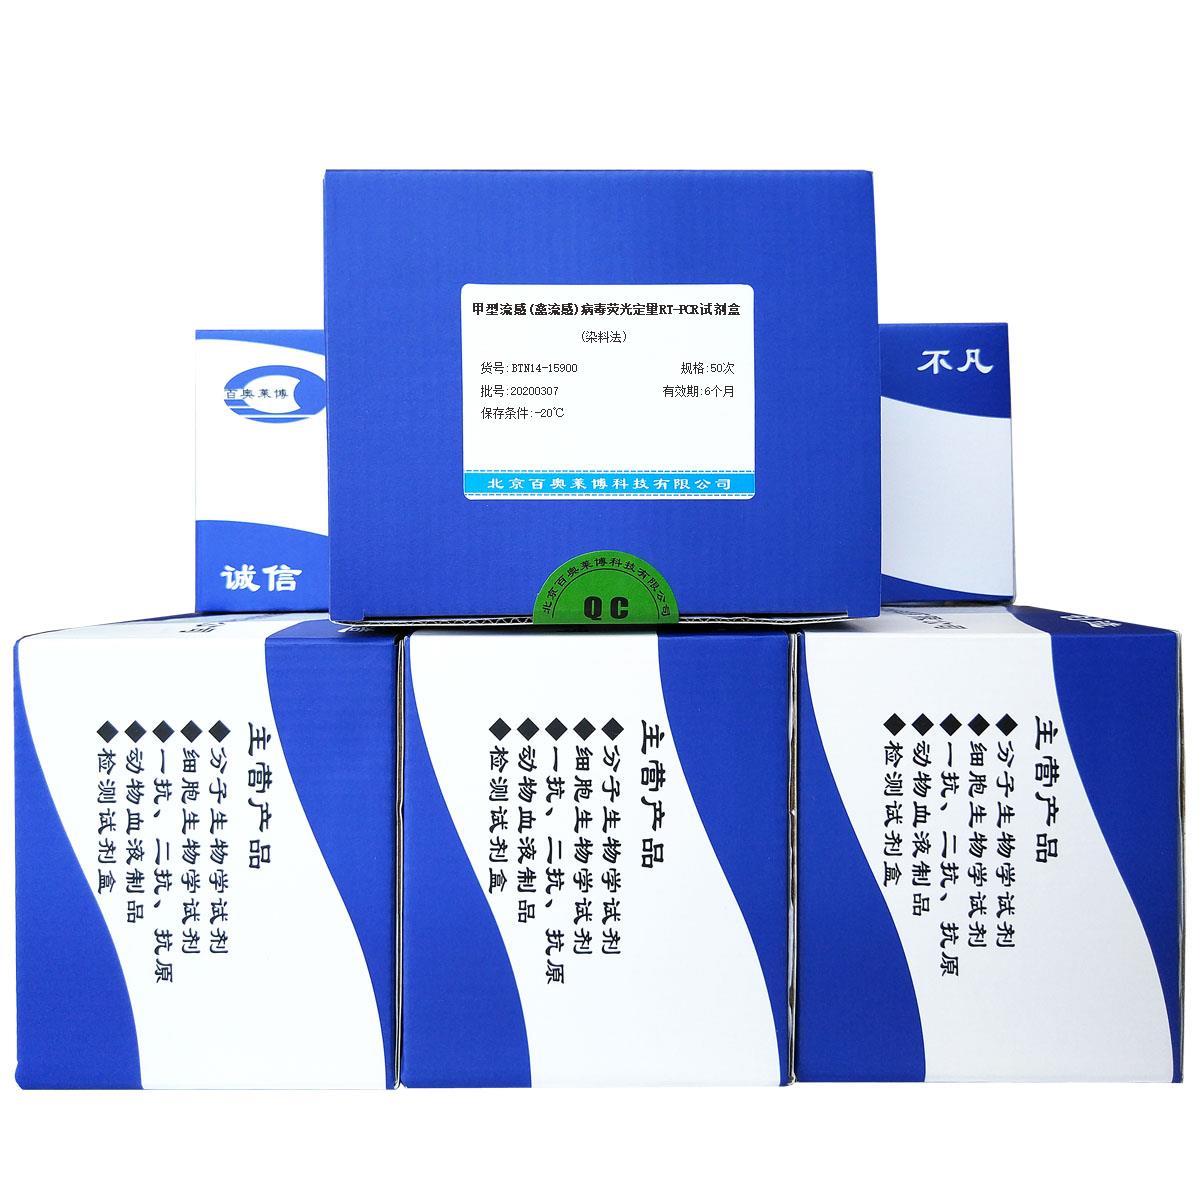 甲型流感(禽流感)病毒荧光定量RT-PCR试剂盒(染料法)